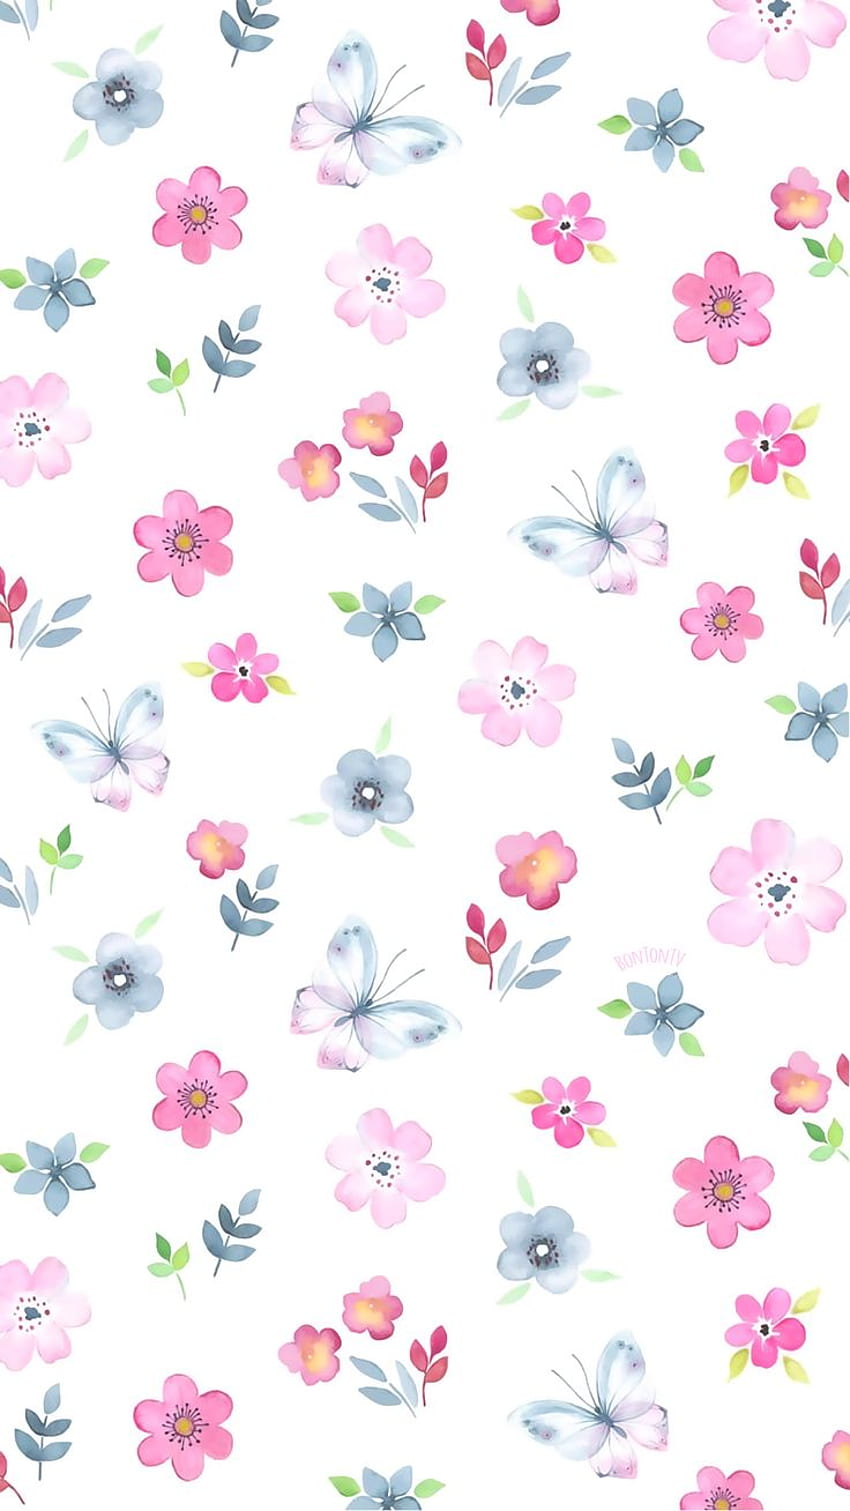 폰수채화 귀여운 패턴 - by BonTon TV - 배경 (아이폰, 스마트폰) 여기서 엘레강스 컬렉션을 만나보실 수 있습니다. 꽃 전화, 귀여운 아이폰, 쿨, 귀여운 다채로운 패턴 HD 전화 배경 화면